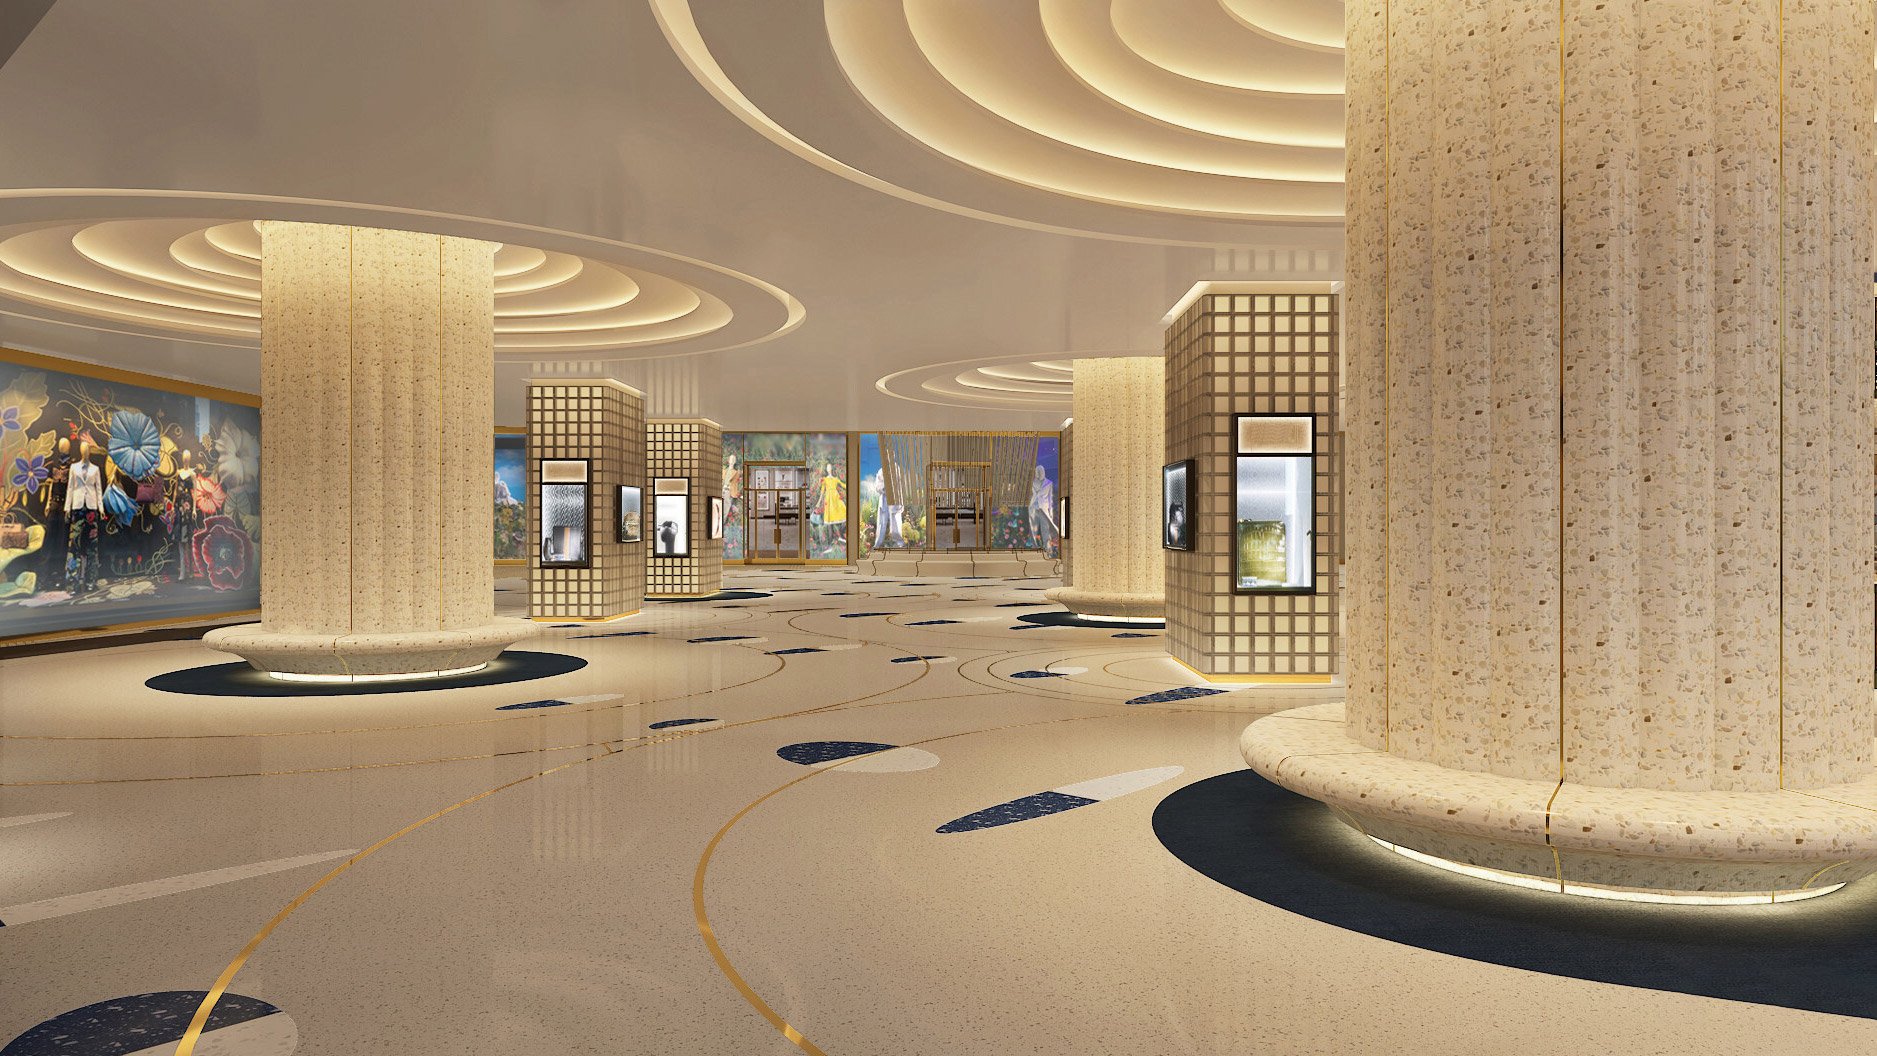 Fontainebleau anunció un nuevo centro comercial de lujo en su próximo resort de Las Vegas